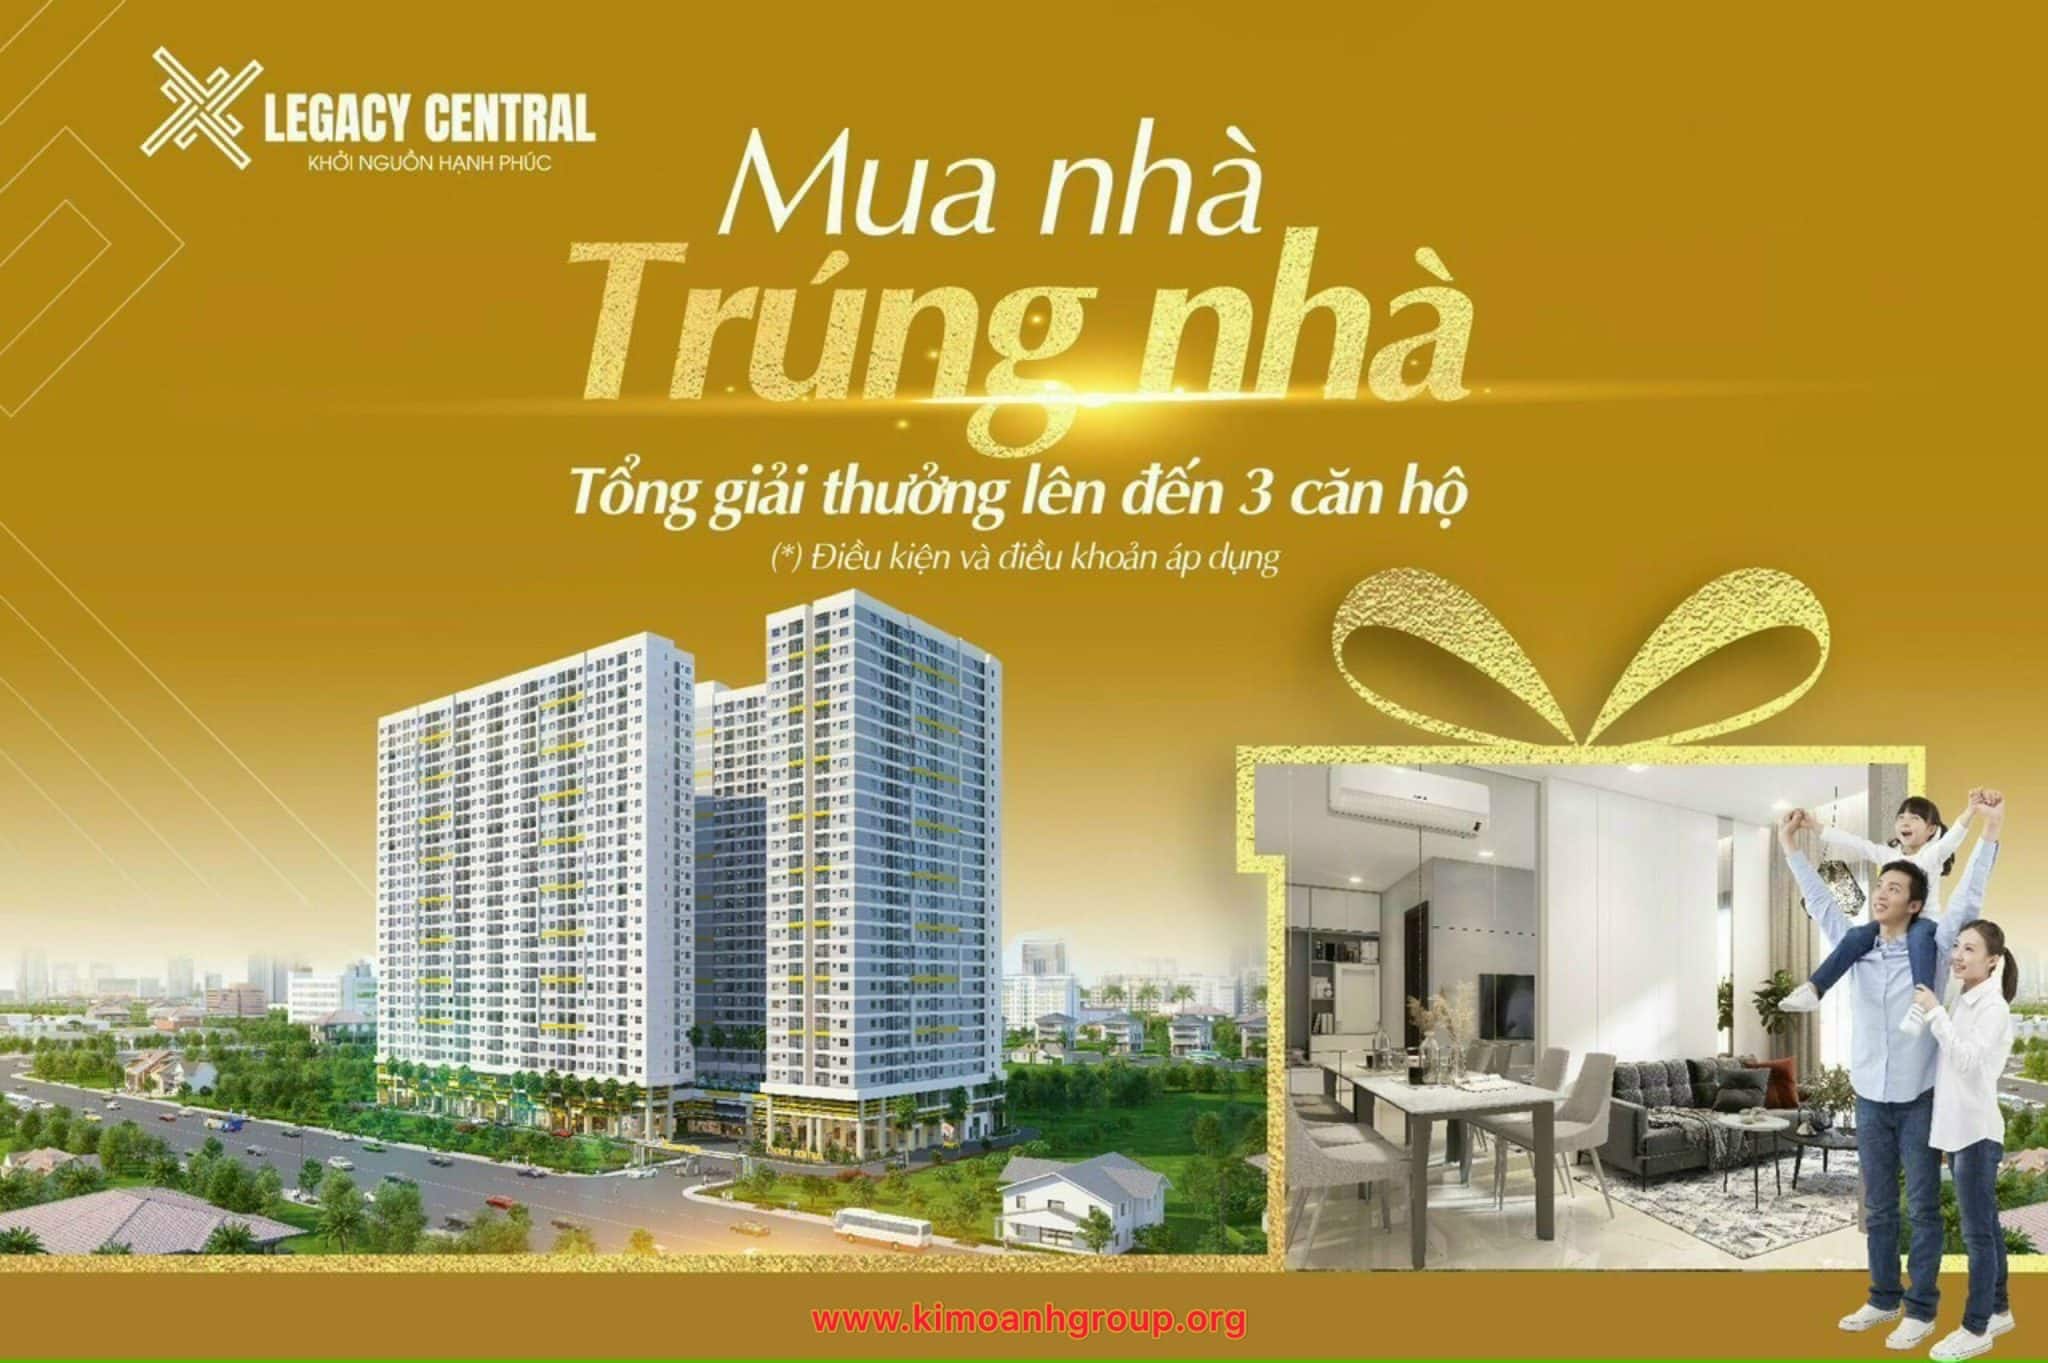 Khu căn hộ Legacy Central tọa lạc tại khu vực trung tâm thành phố Thuận An. Đây là dự án có mức giá từ 900 triệu một căn, cùng với các chính sách hỗ trợ tài chính tối ưu. Cụ thể, khách hàng thanh toán trước 15%, tương đương 150 triệu đồng, phần còn lại được ngân hàng OCB hỗ trợ vay lên đến 75% trong 25 năm, chia nhỏ tiến độ thanh toán nhiều đợt và được chủ đầu tư hỗ trợ lãi vay trong 18 tháng.